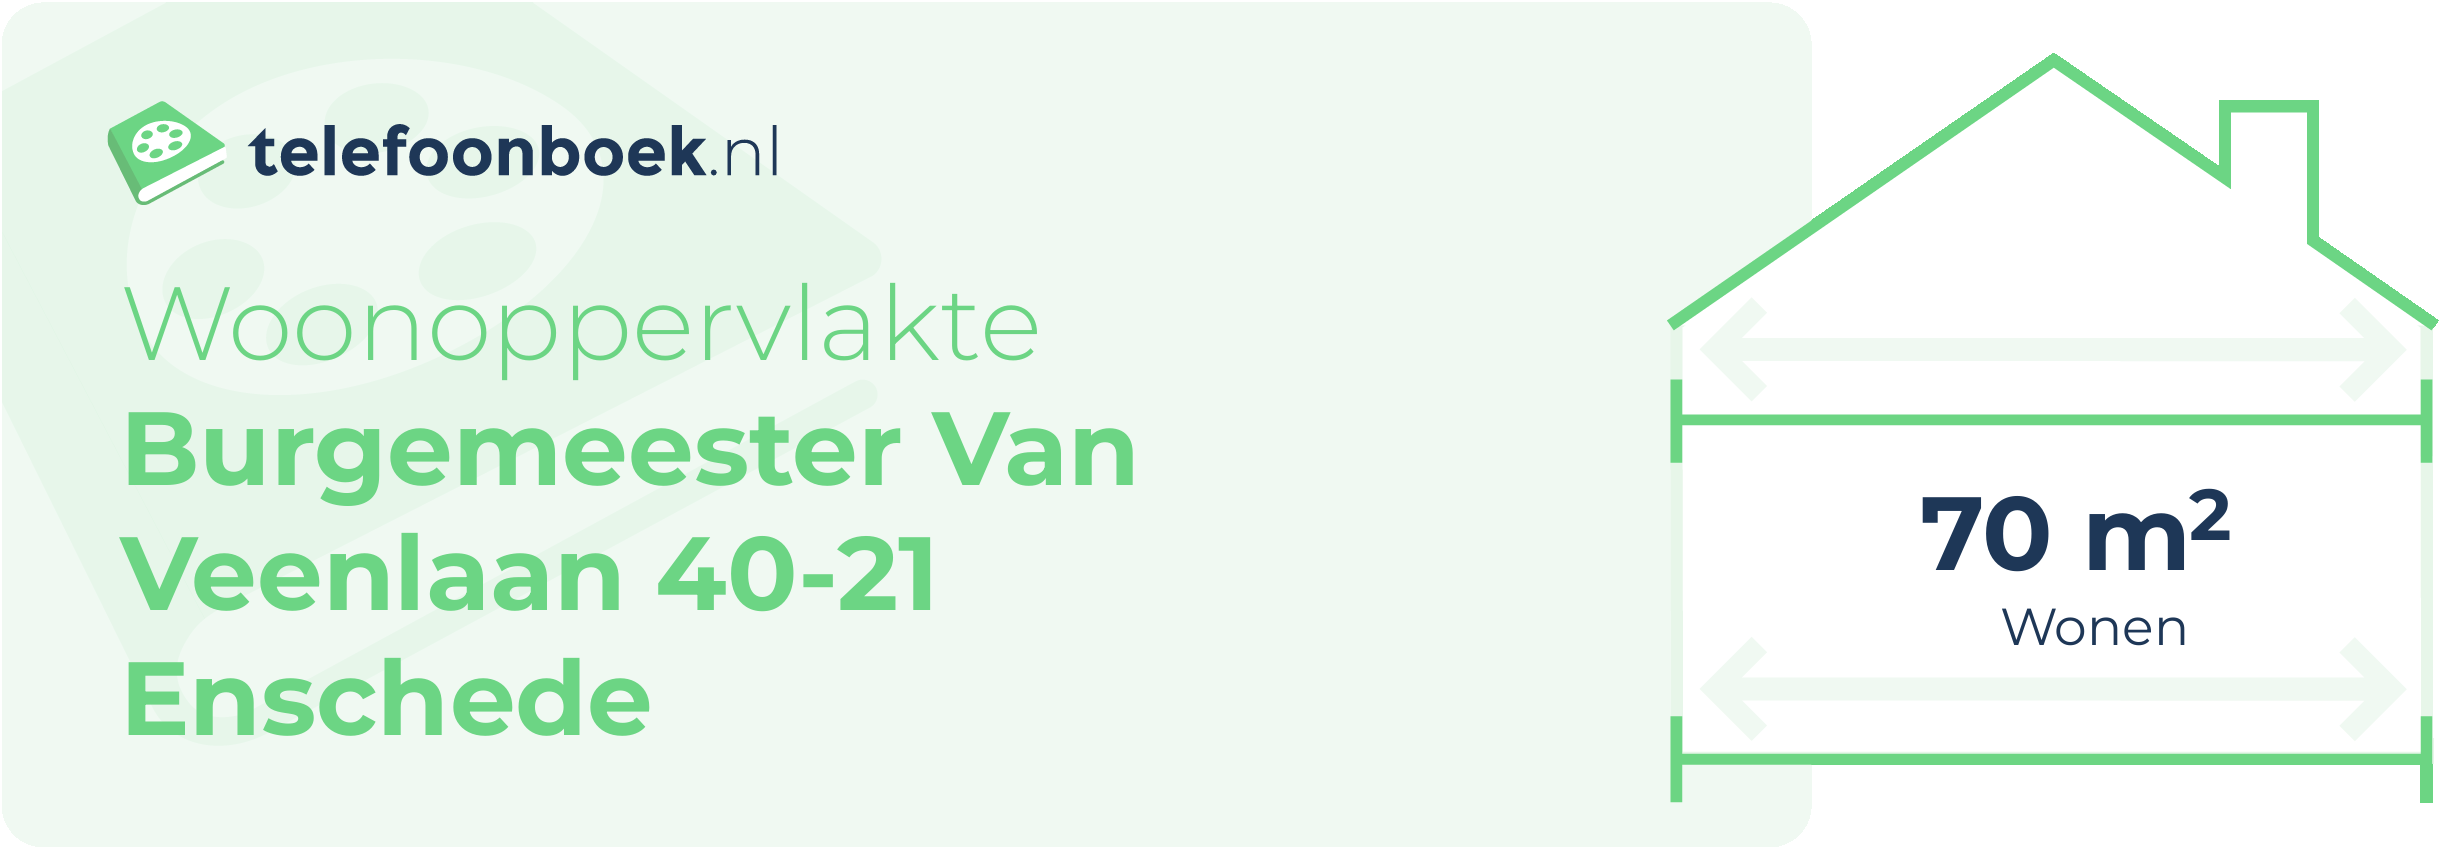 Woonoppervlakte Burgemeester Van Veenlaan 40-21 Enschede